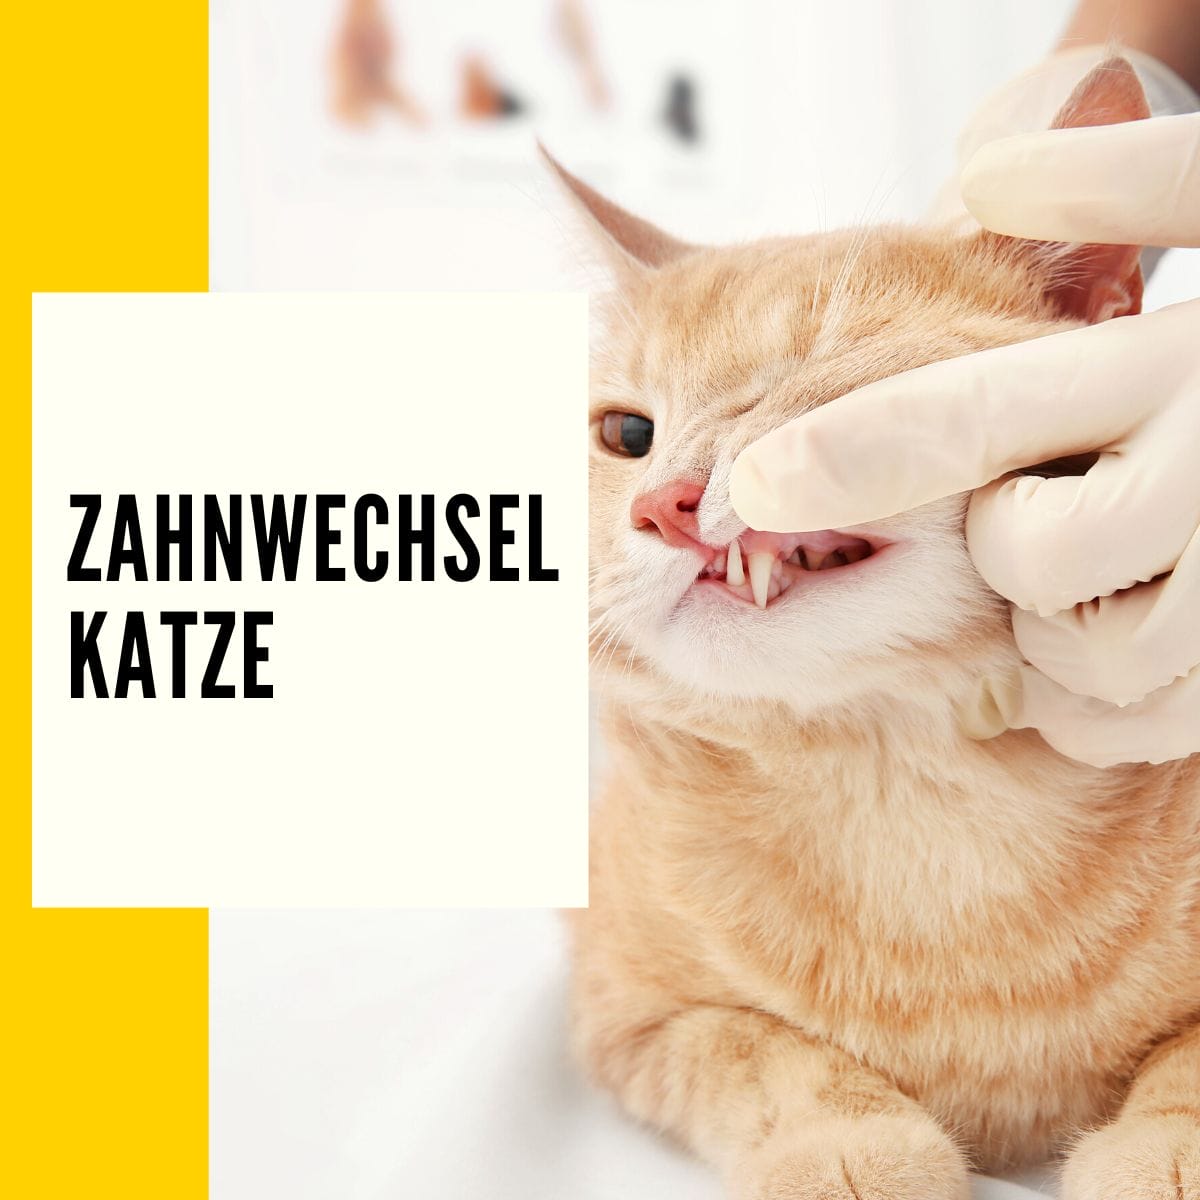 Zahnwechsel Katze: In diesem Beitrag geht es um: Zahnfleischentzündungen & die Entwicklung der Zähne deiner Katze!